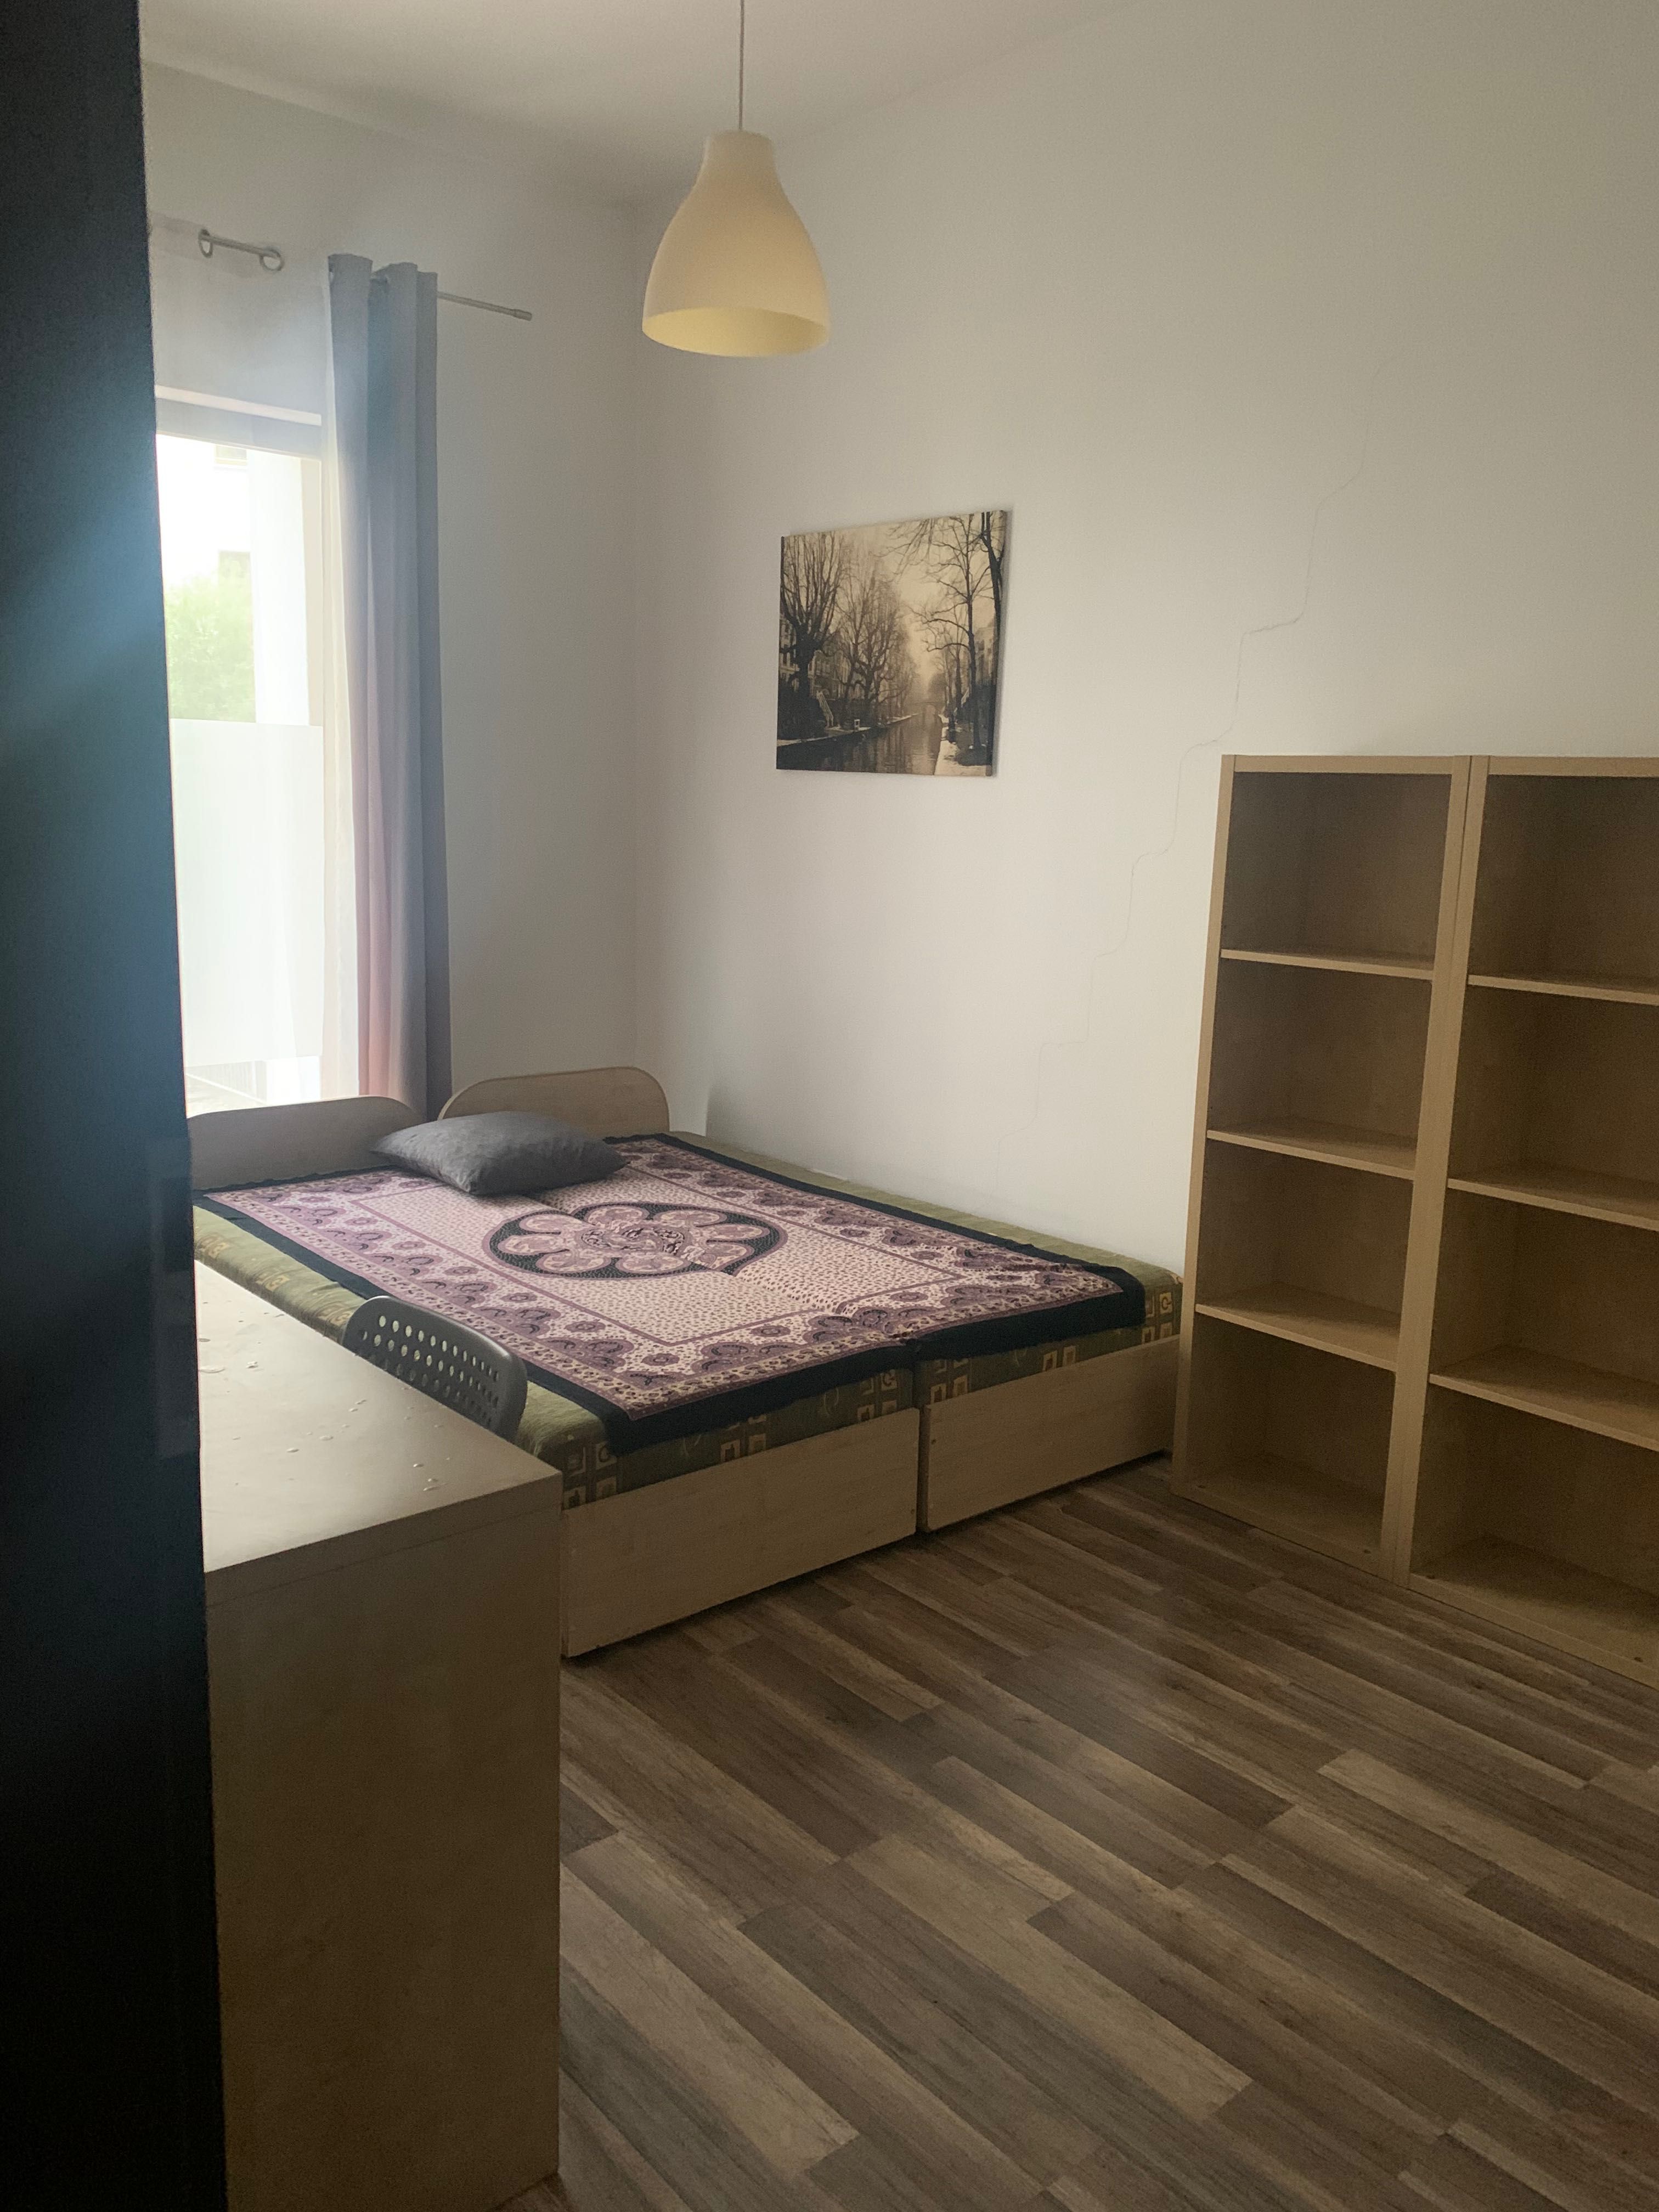 Pokój w mieszkaniu 2-pokojowym/ Room in a 2-room apartment - Młociny